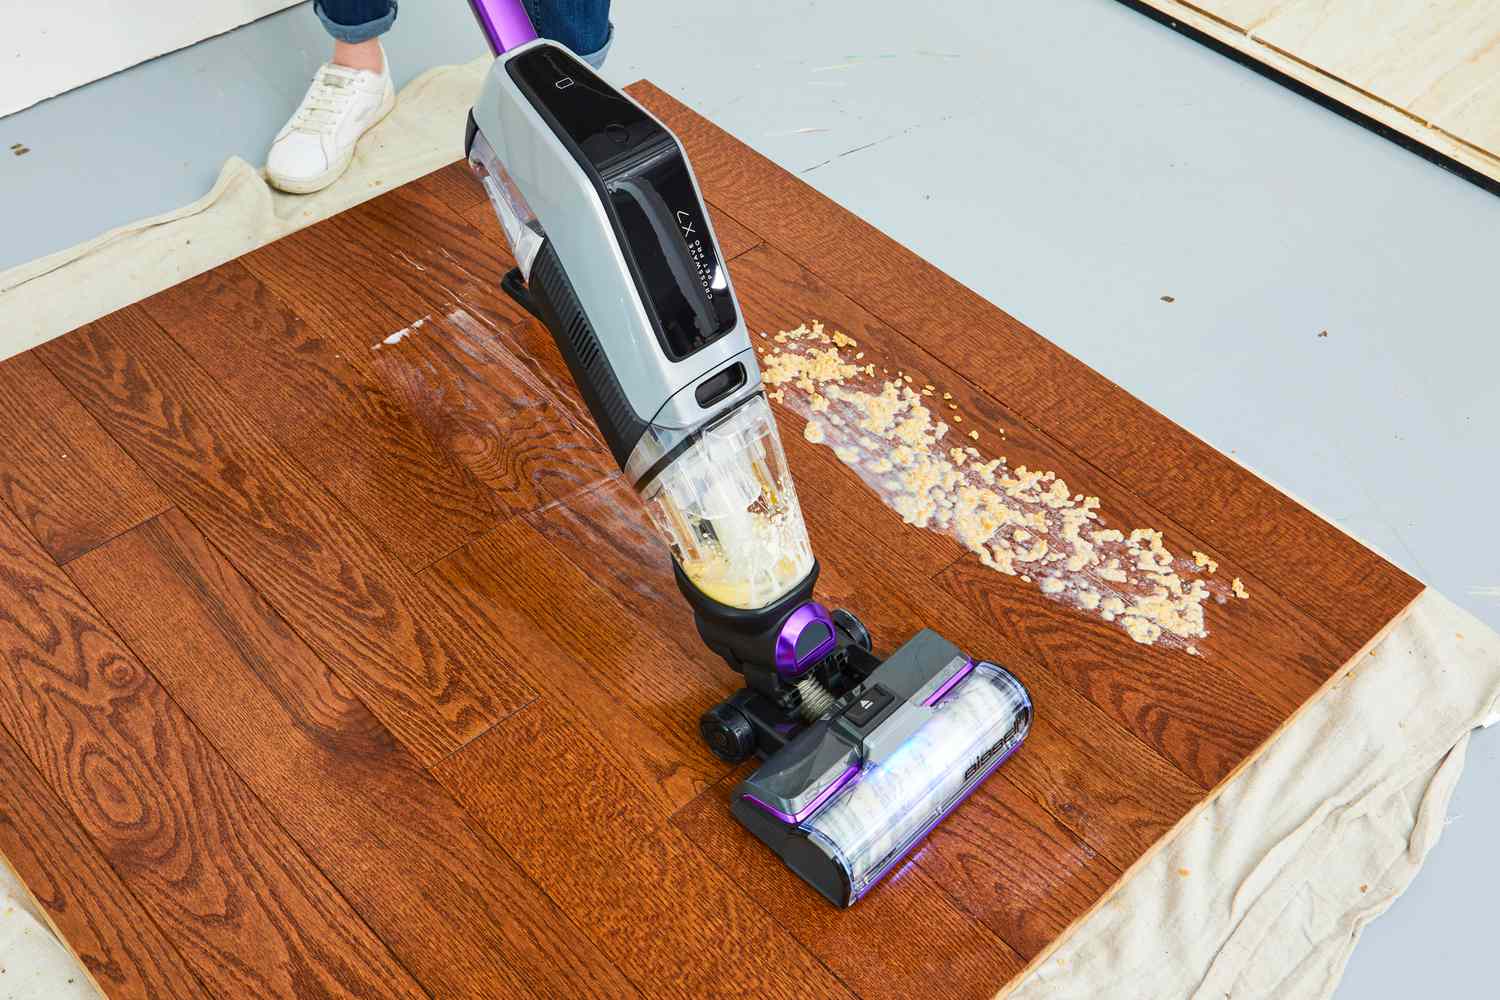 Testing vacuum on wooden floor